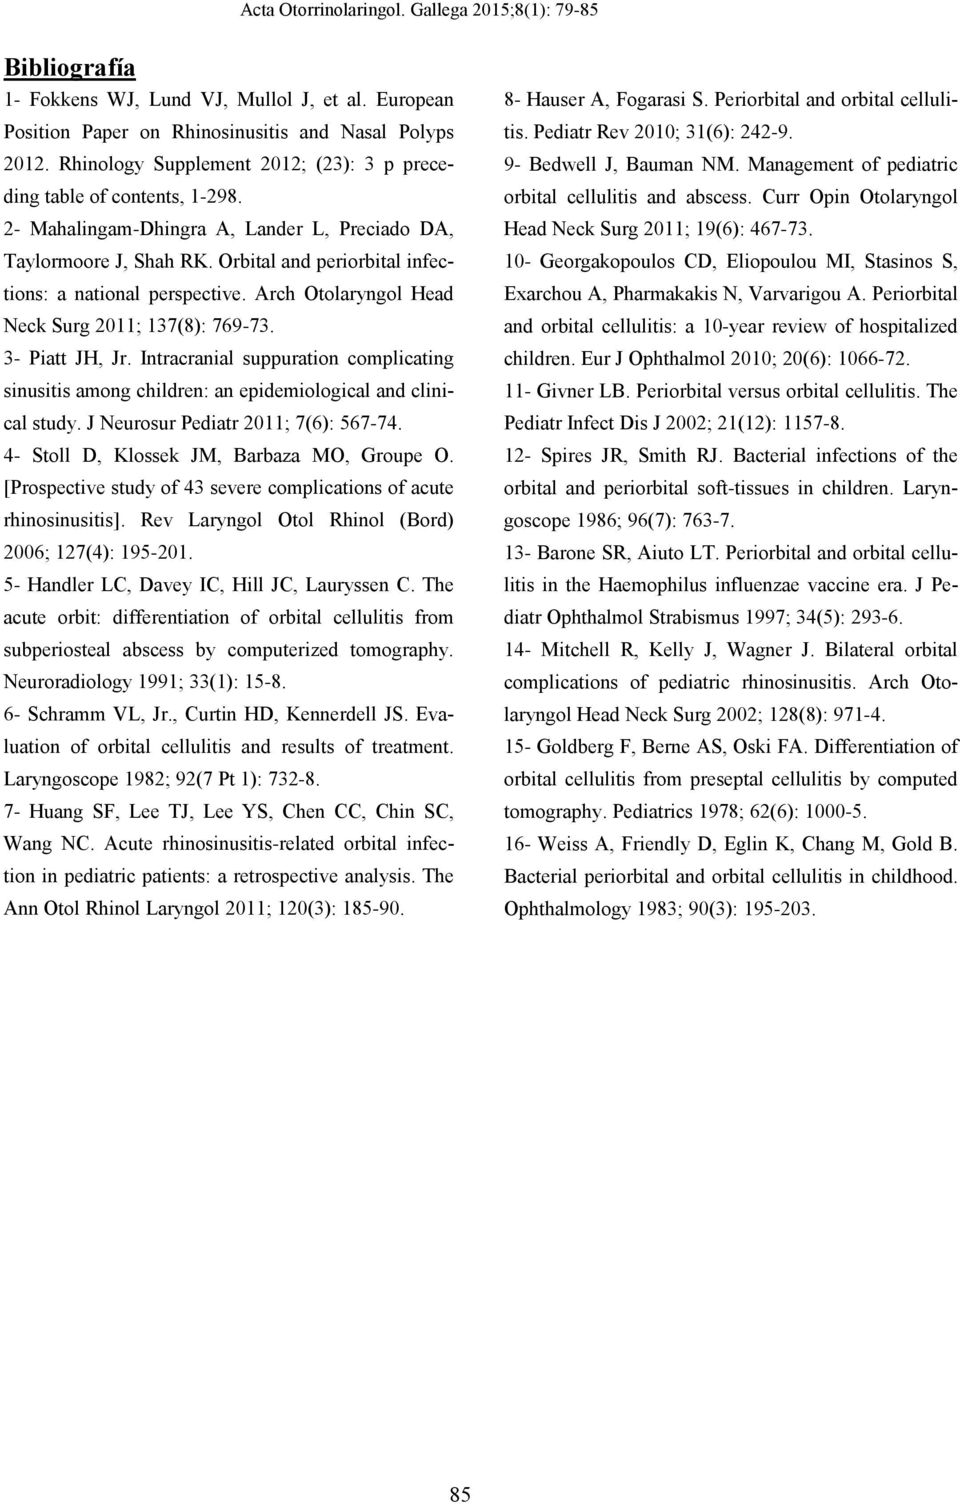 3- Piatt JH, Jr. Intracranial suppuration complicating sinusitis among children: an epidemiological and clinical study. J Neurosur Pediatr 2011; 7(6): 567-74.